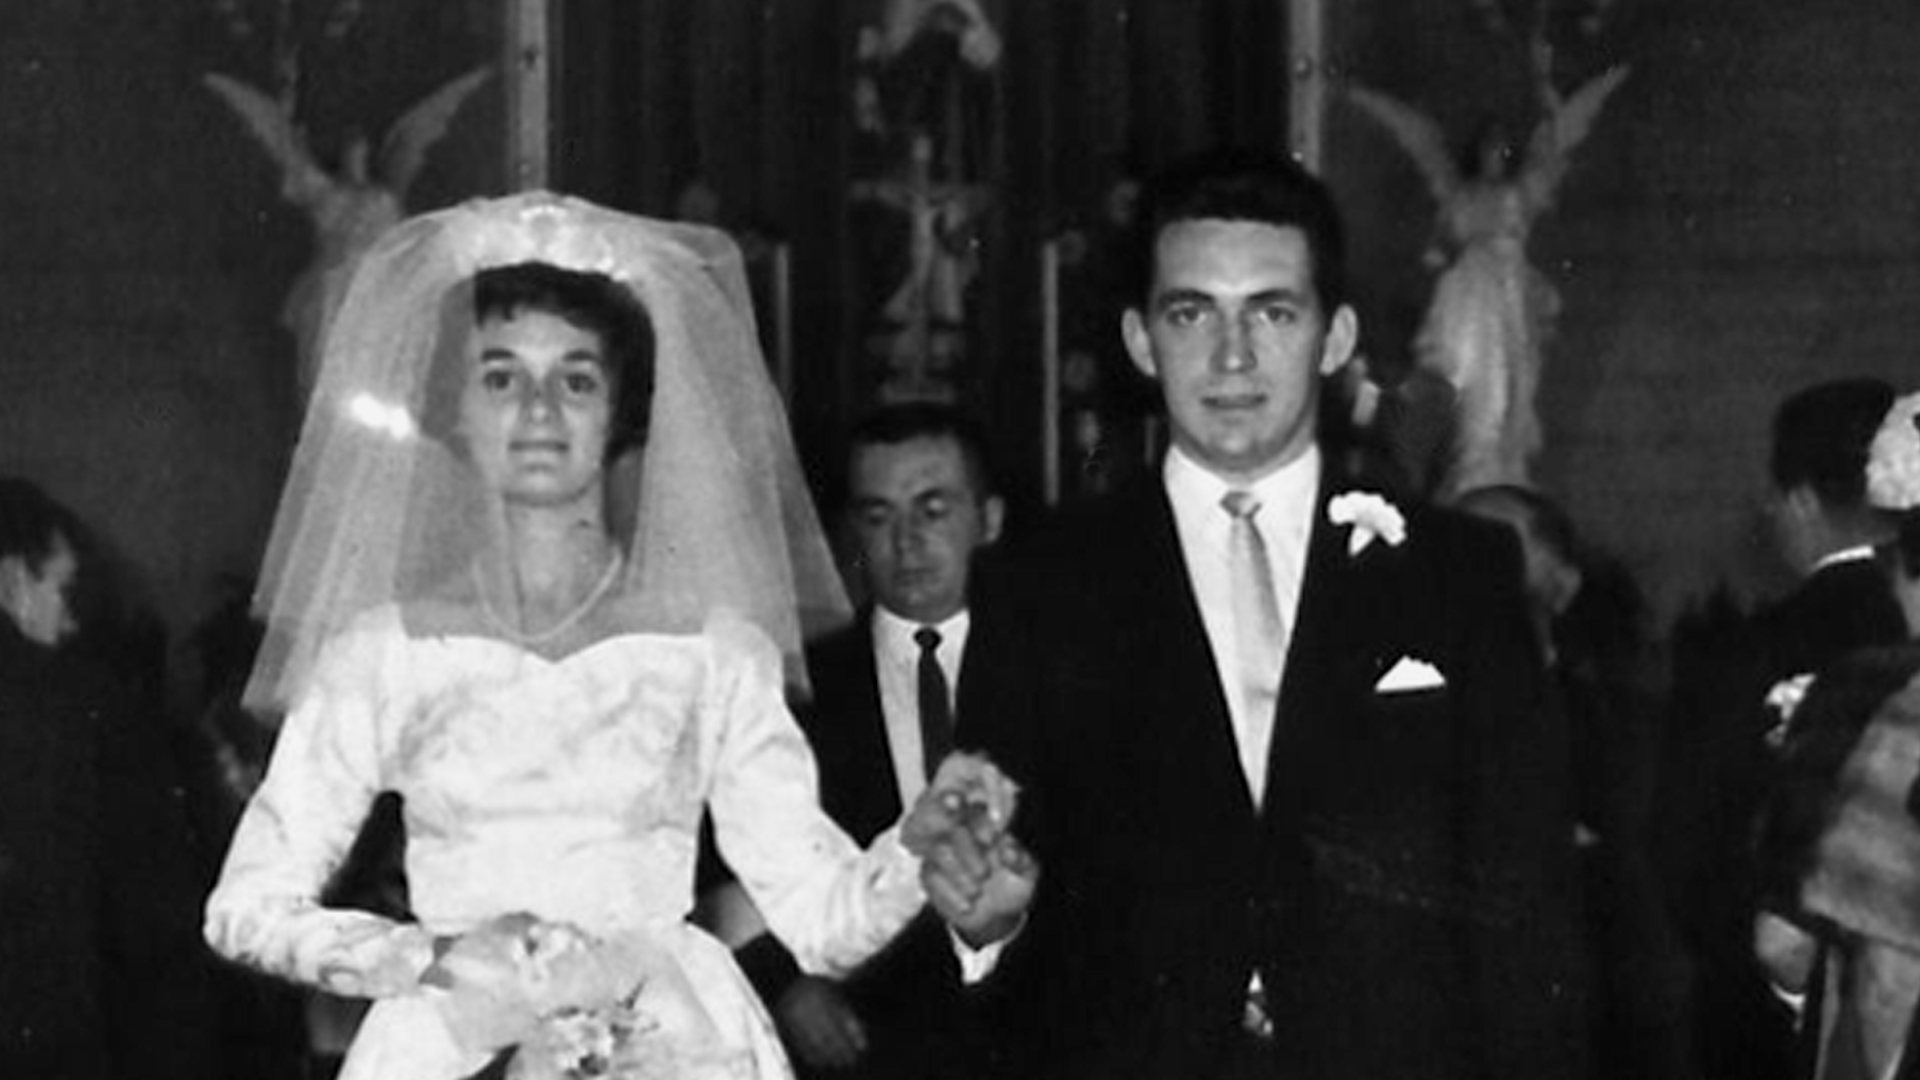 Image extraite du film « Chroniques hospitalières », un couple souriant en tenue de mariage.